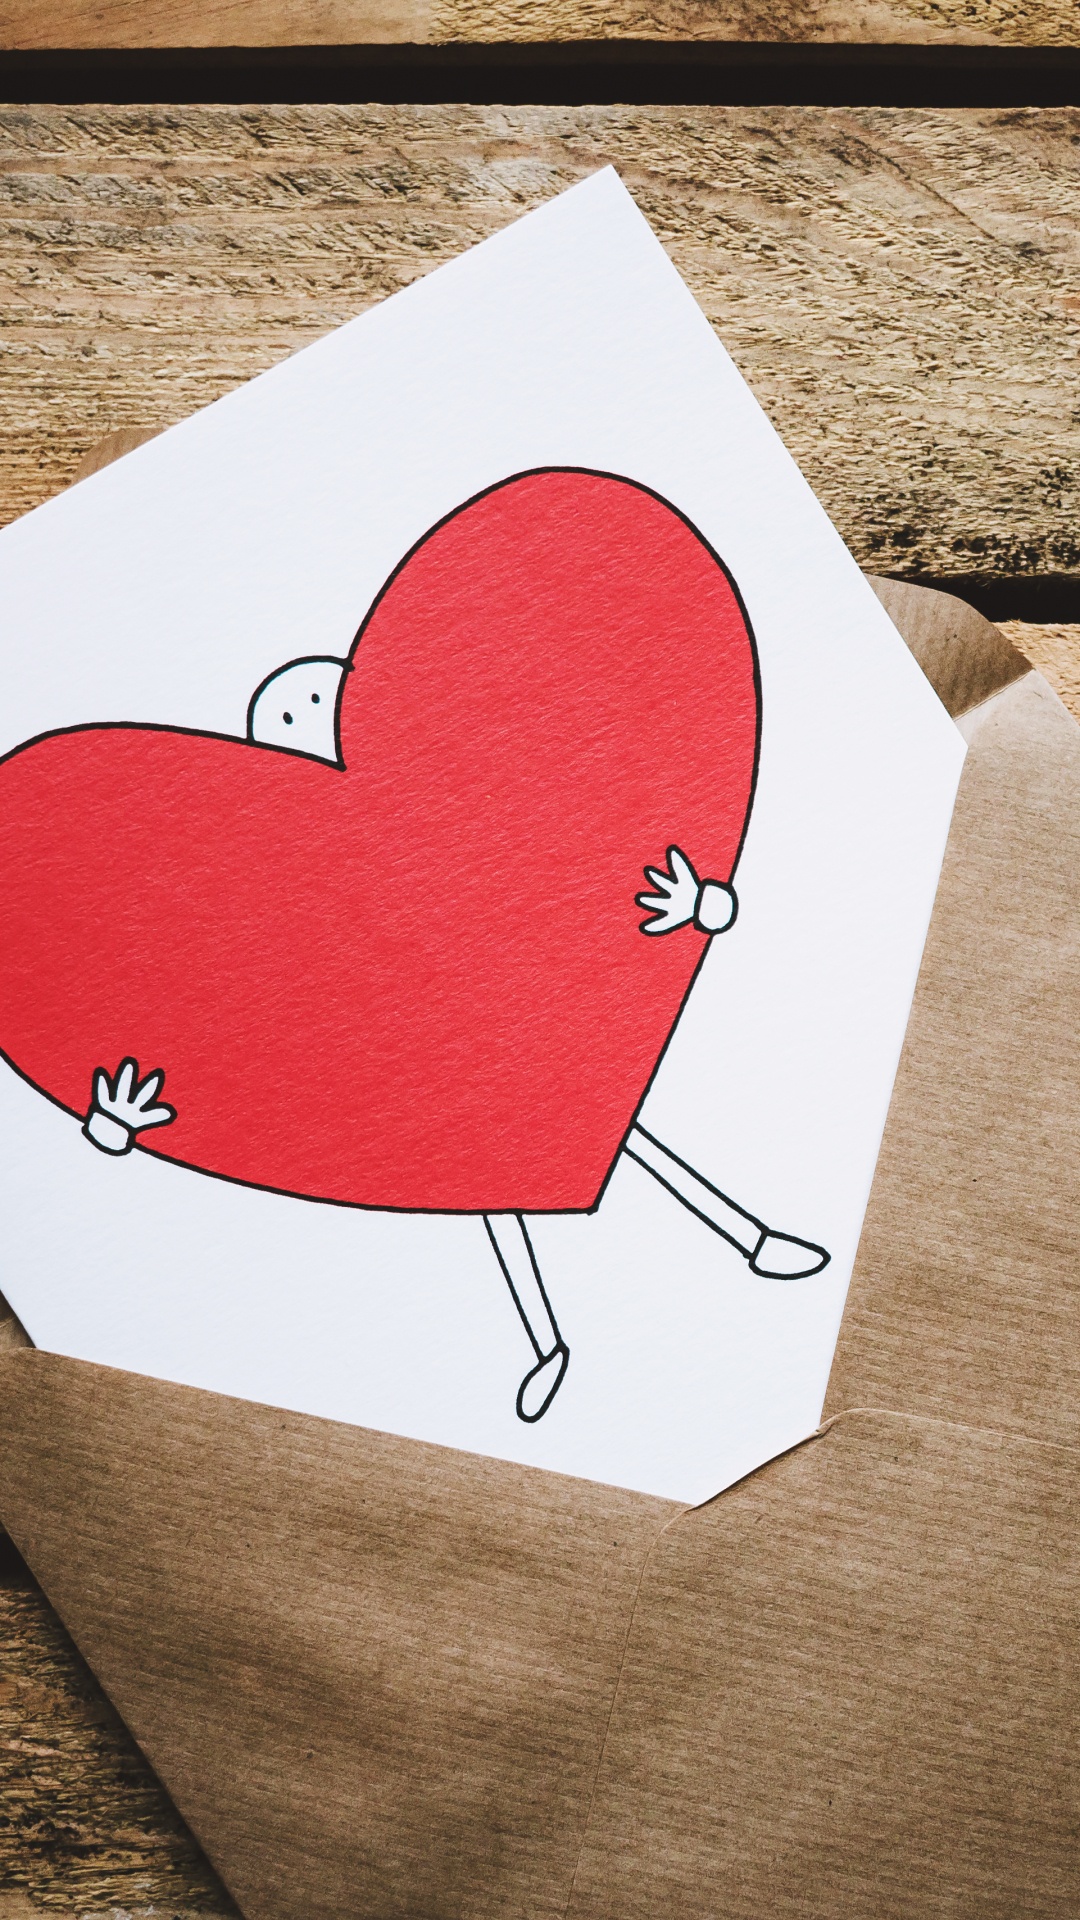 情书, 浪漫, 心脏, 红色的, 爱情 壁纸 1080x1920 允许